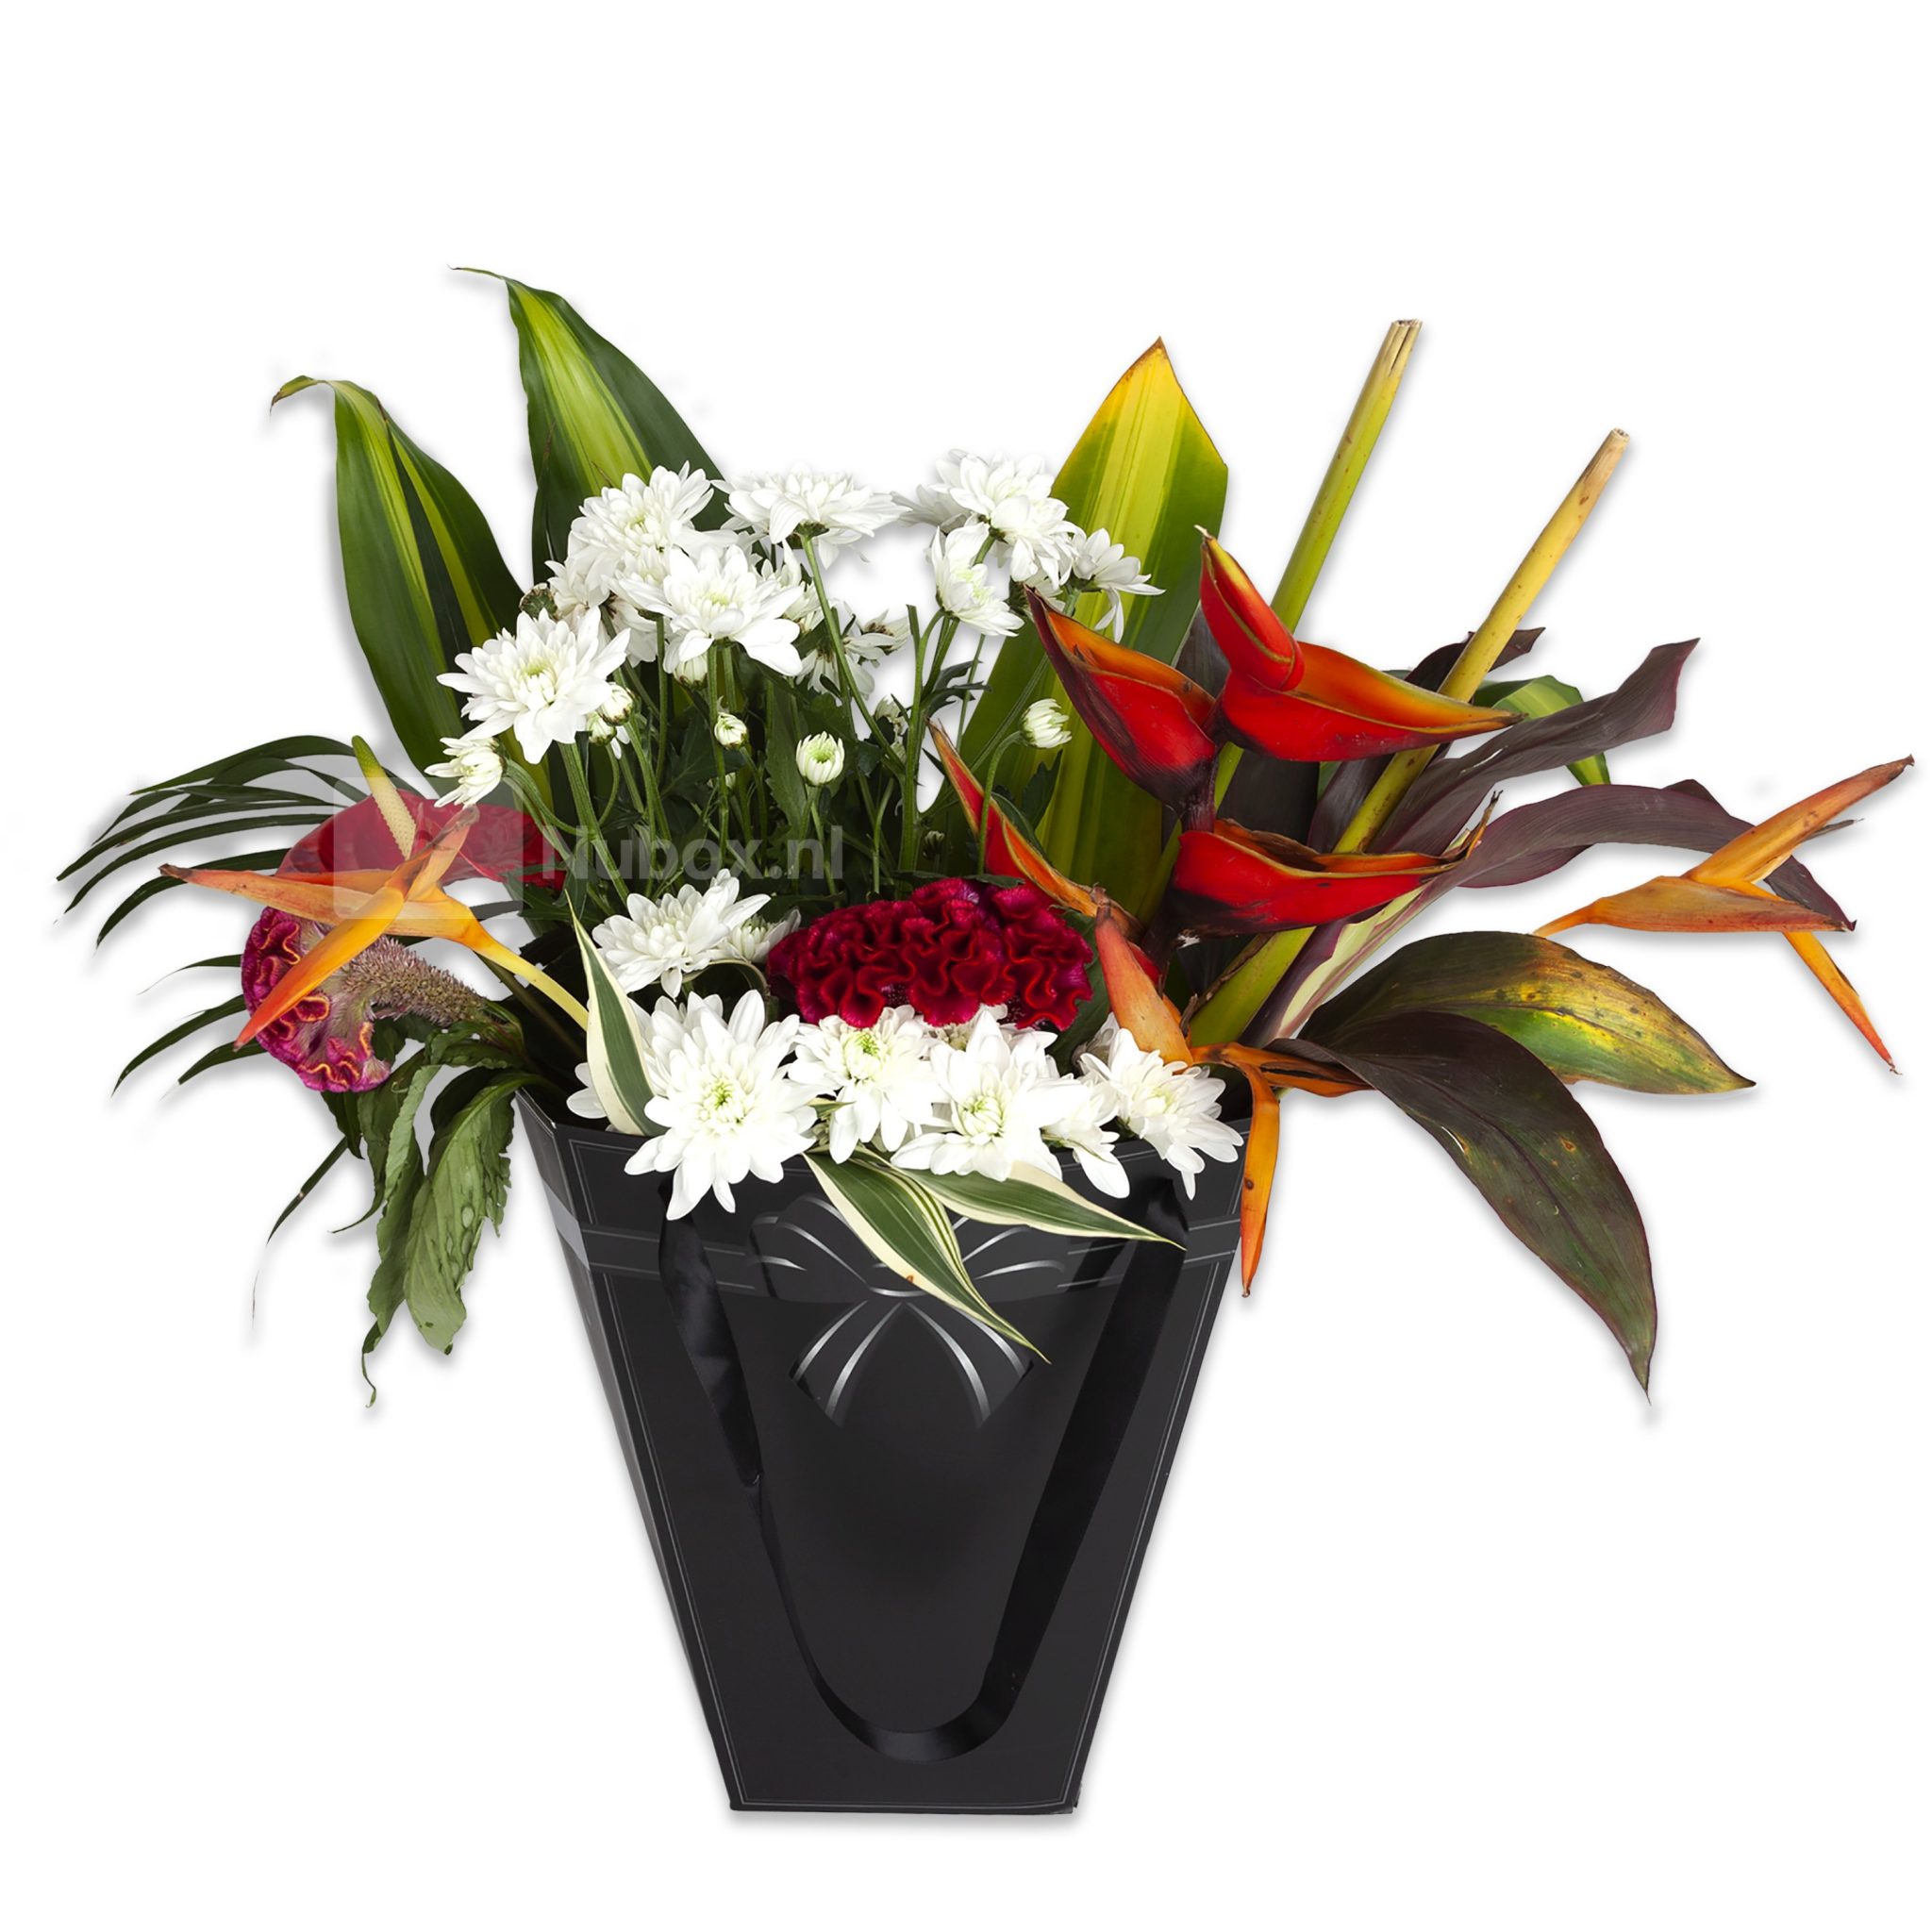 Gezichtsvermogen Defilé welvaart tropische en exotische bloemen versturen bezorgen Suriname >>Nubox.nl